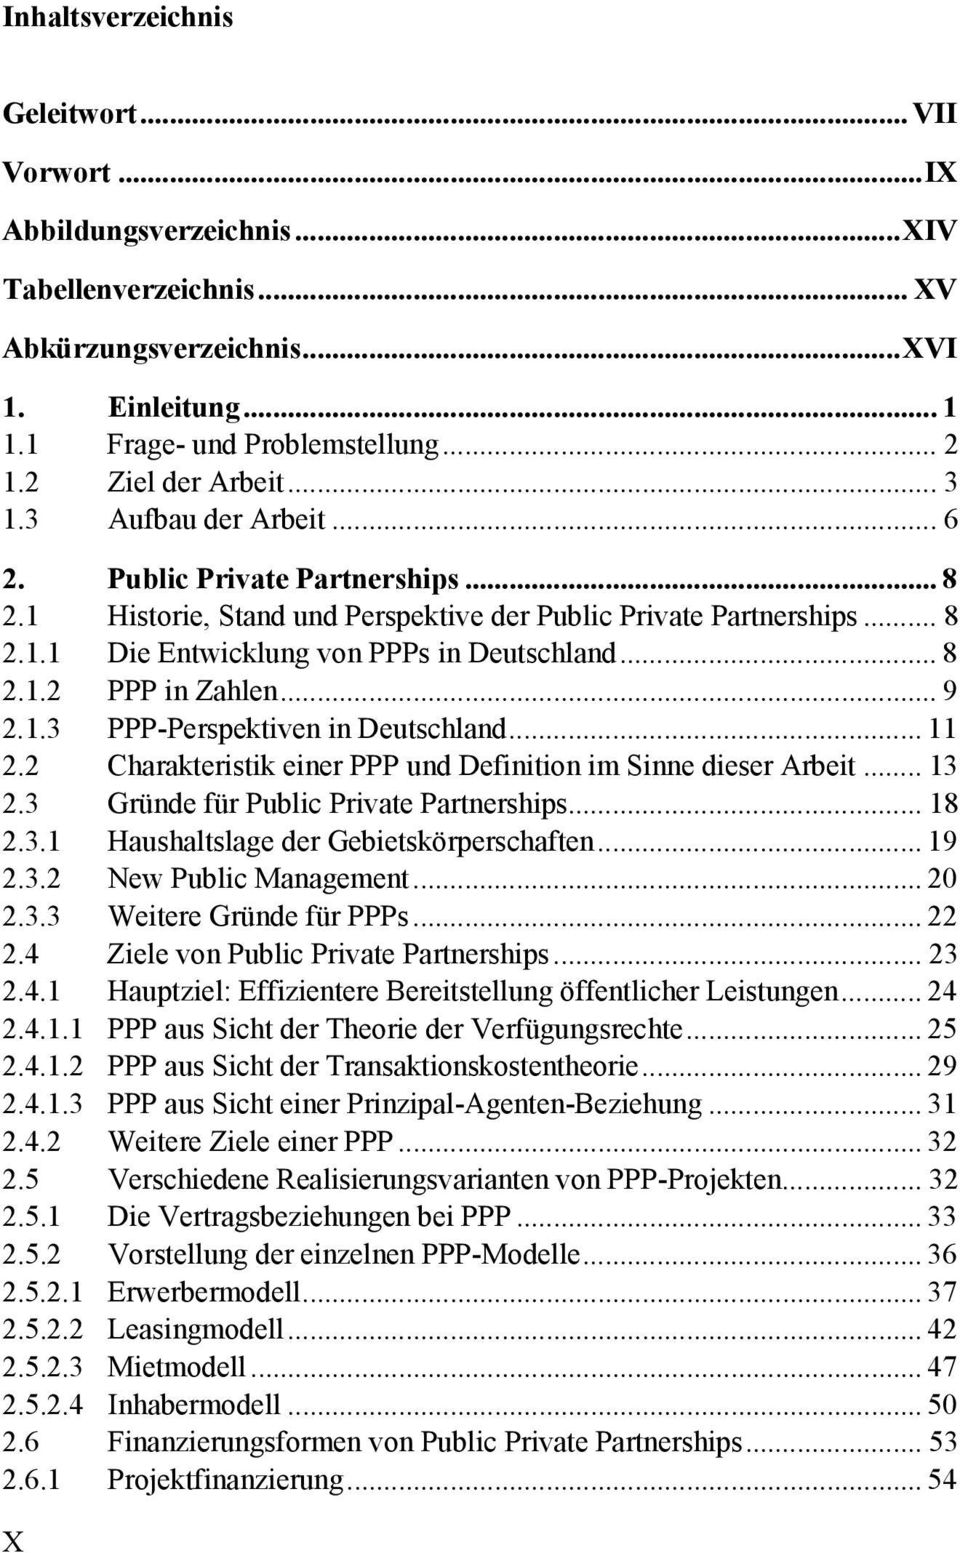 .. 8 2.1.2 PPP in Zahlen... 9 2.1.3 PPP-Perspektiven in Deutschland... 11 2.2 Charakteristik einer PPP und Definition im Sinne dieser Arbeit... 13 2.3 Gründe für Public Private Partnerships... 18 2.3.1 Haushaltslage der Gebietskörperschaften.